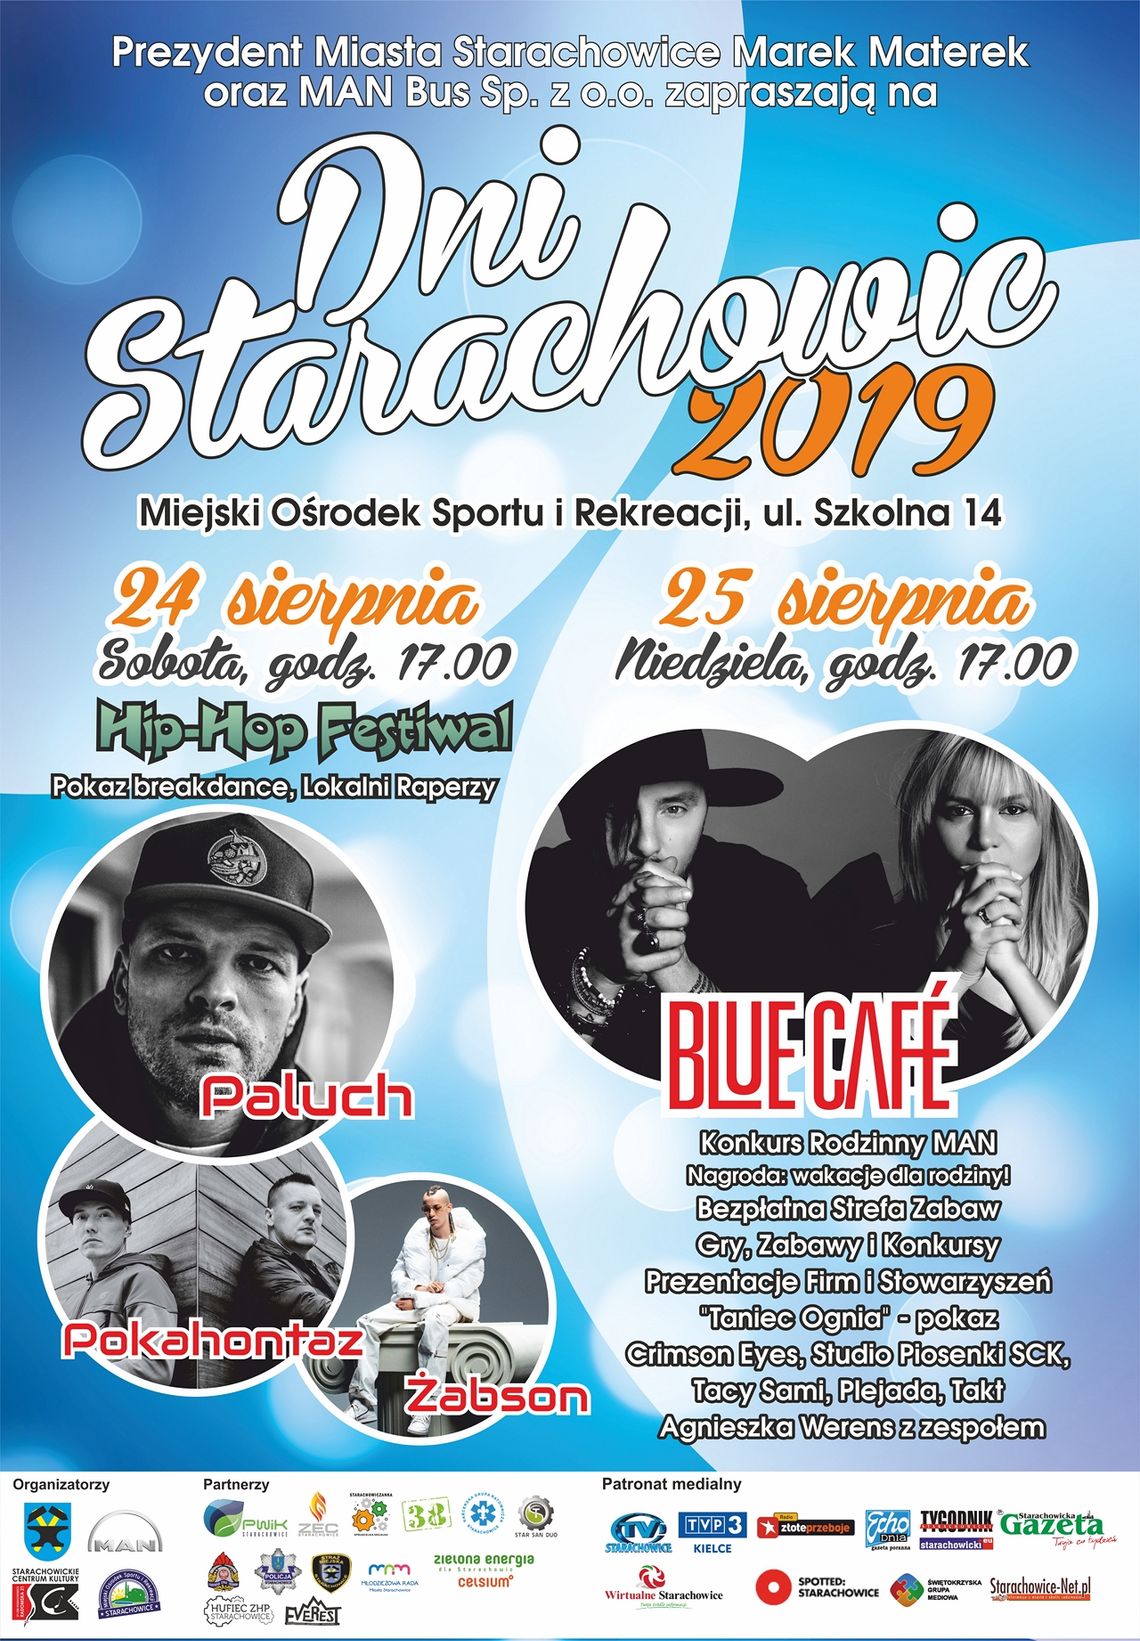 Dwa dni wypełnione dobrą zabawą i muzyką czyli Dni Starachowic 2019